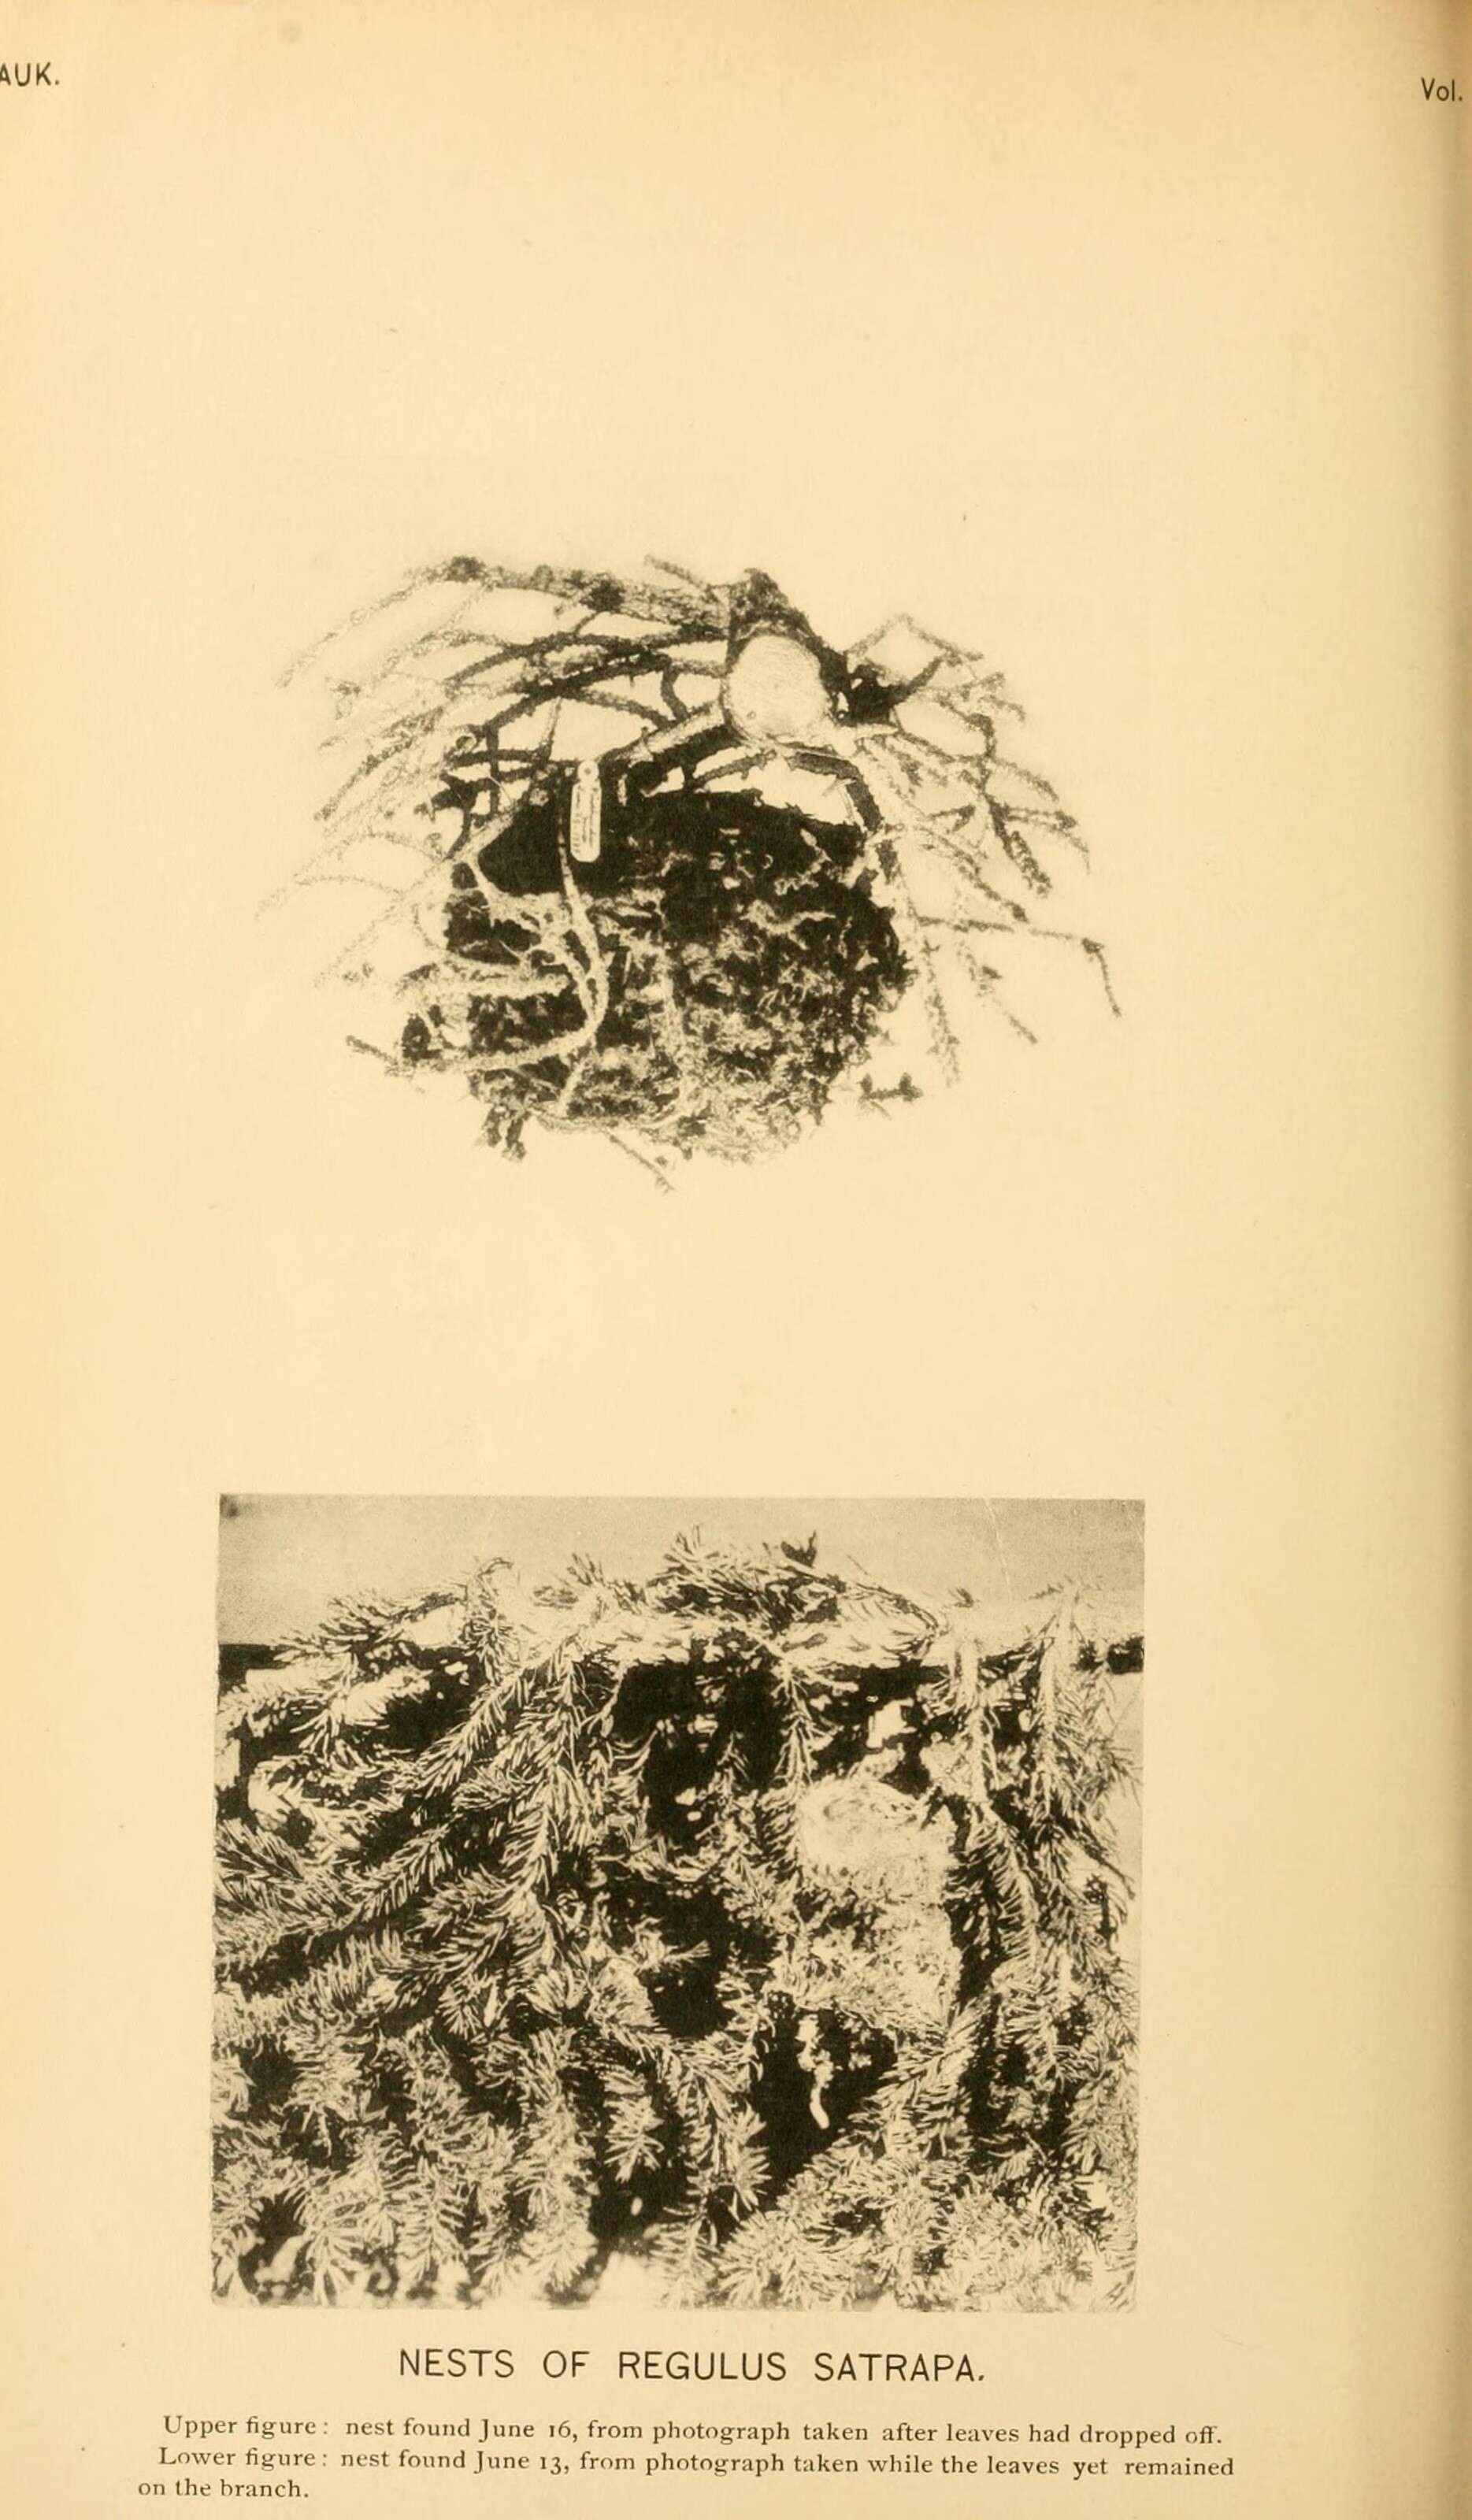 Image of goldcrests and kinglets